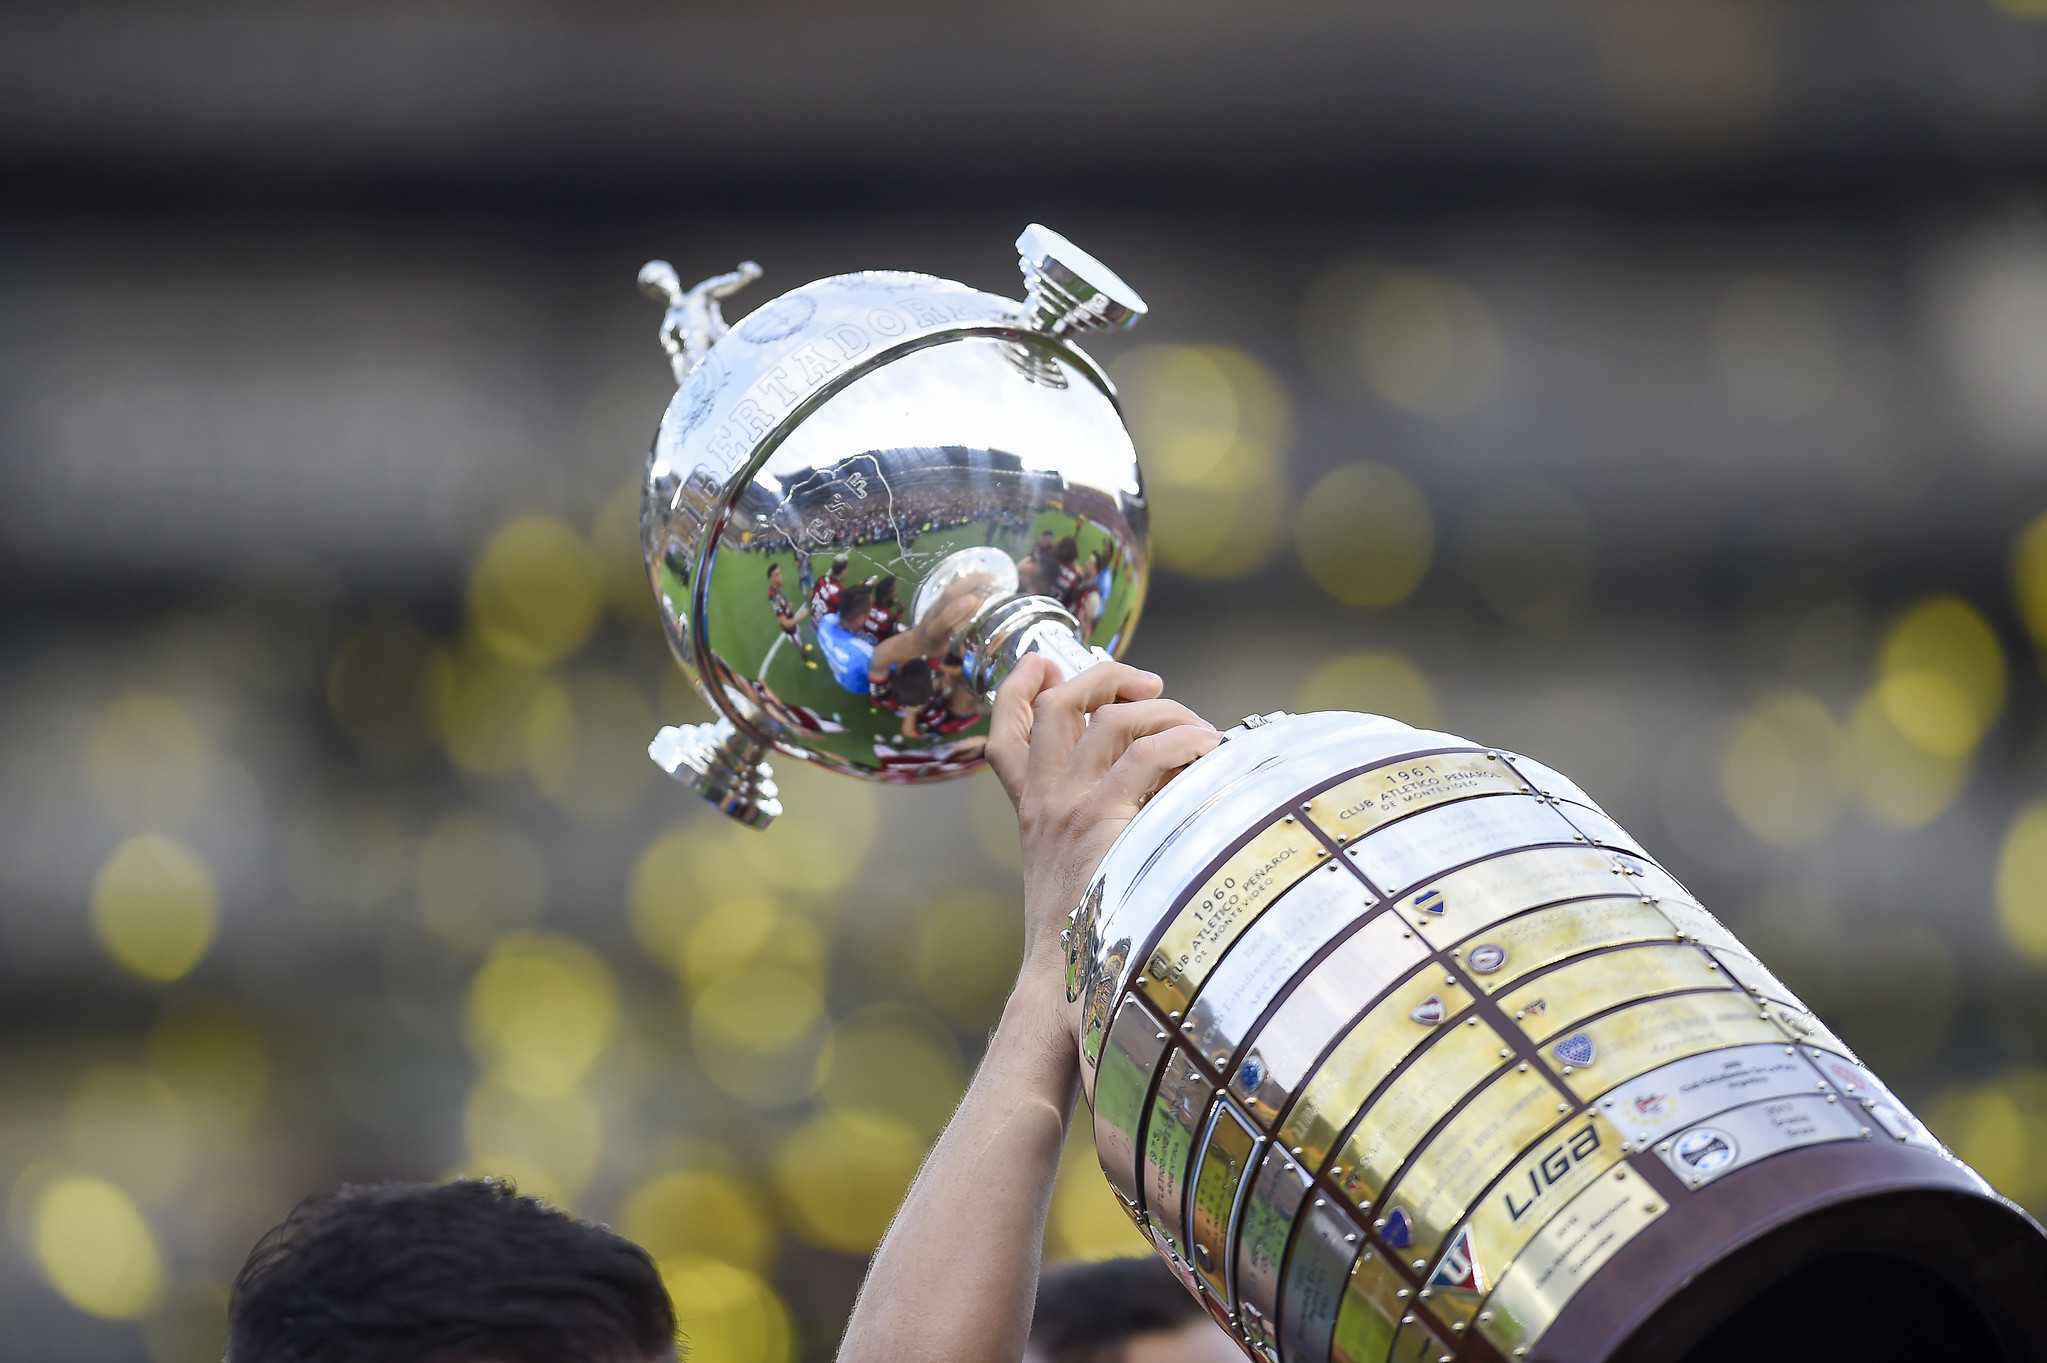 Liga de Quito x Flamengo AO VIVO  Libertadores da América 